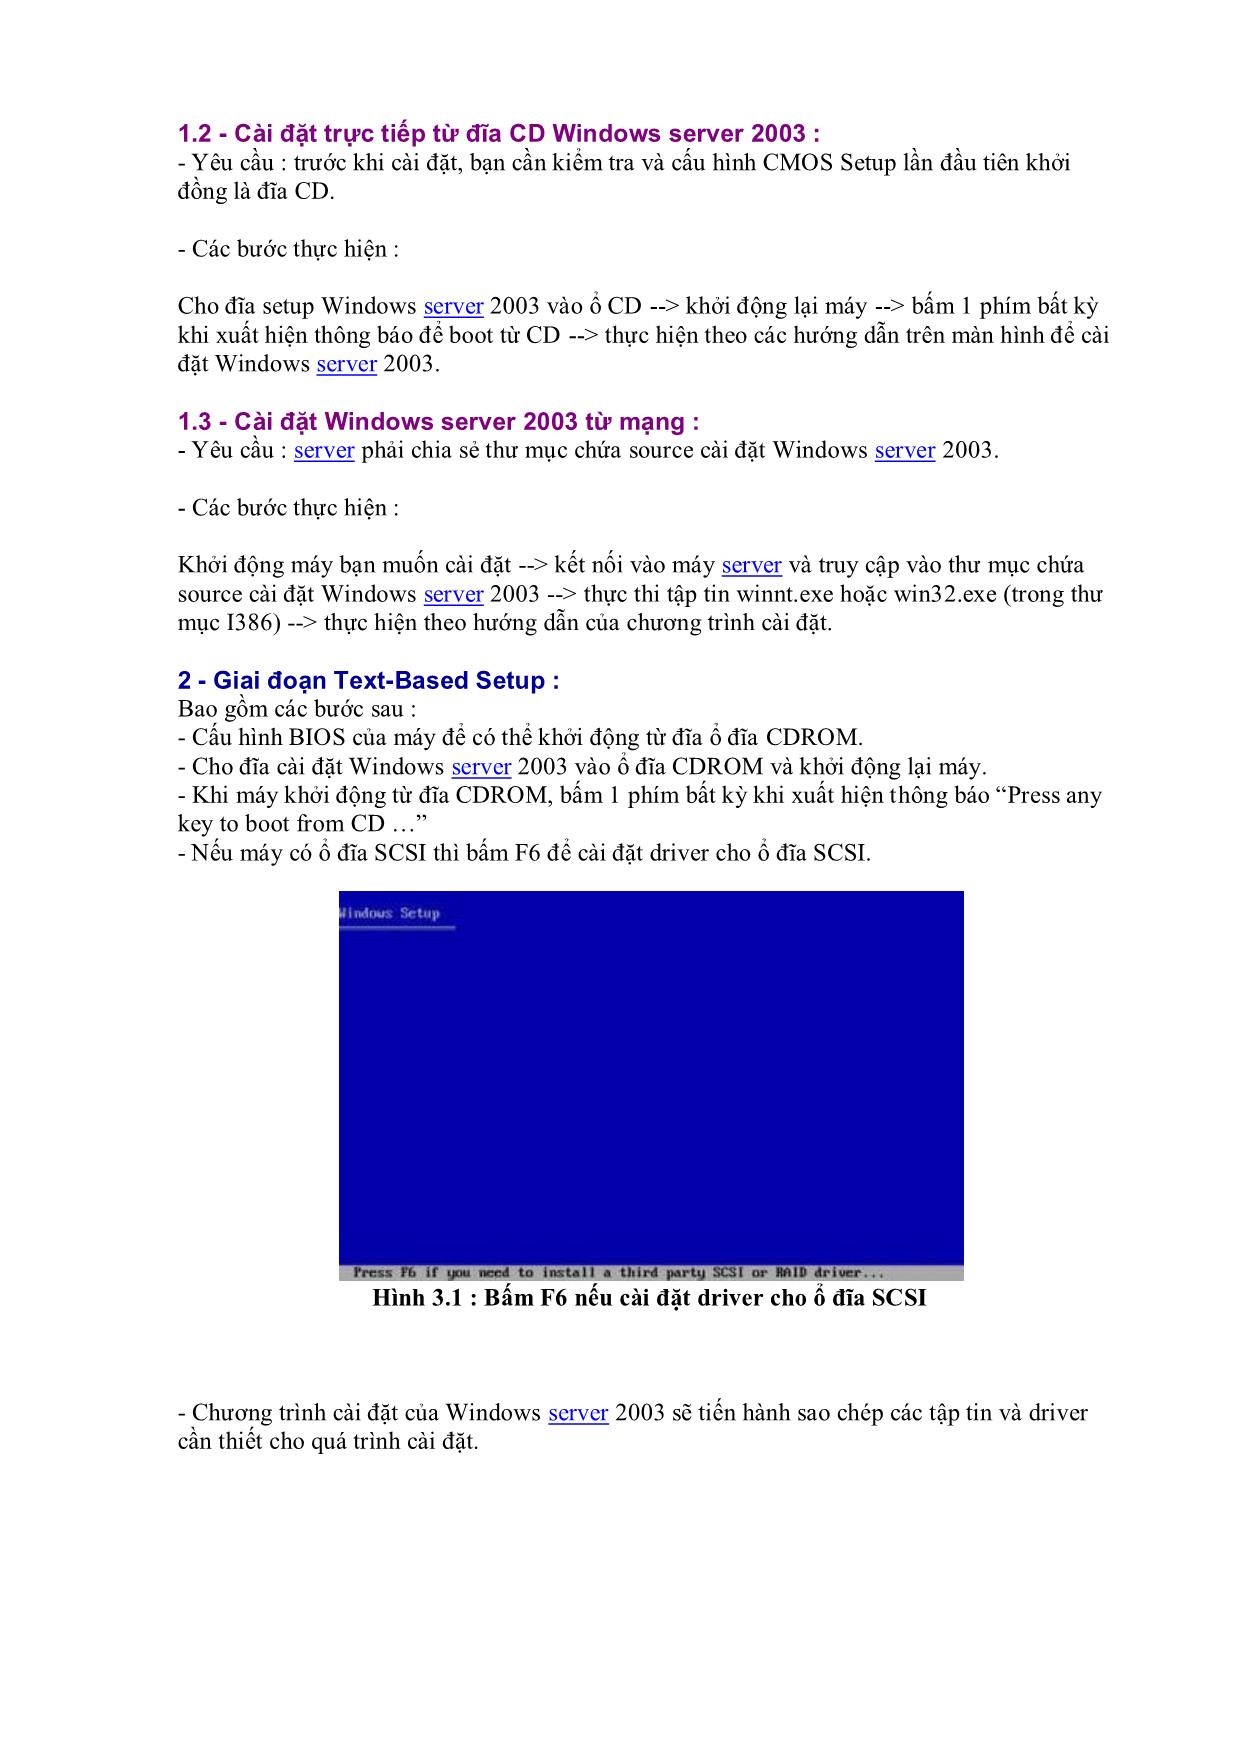 Hướng dẫn Cài đặt Windows Server 2003 trang 4